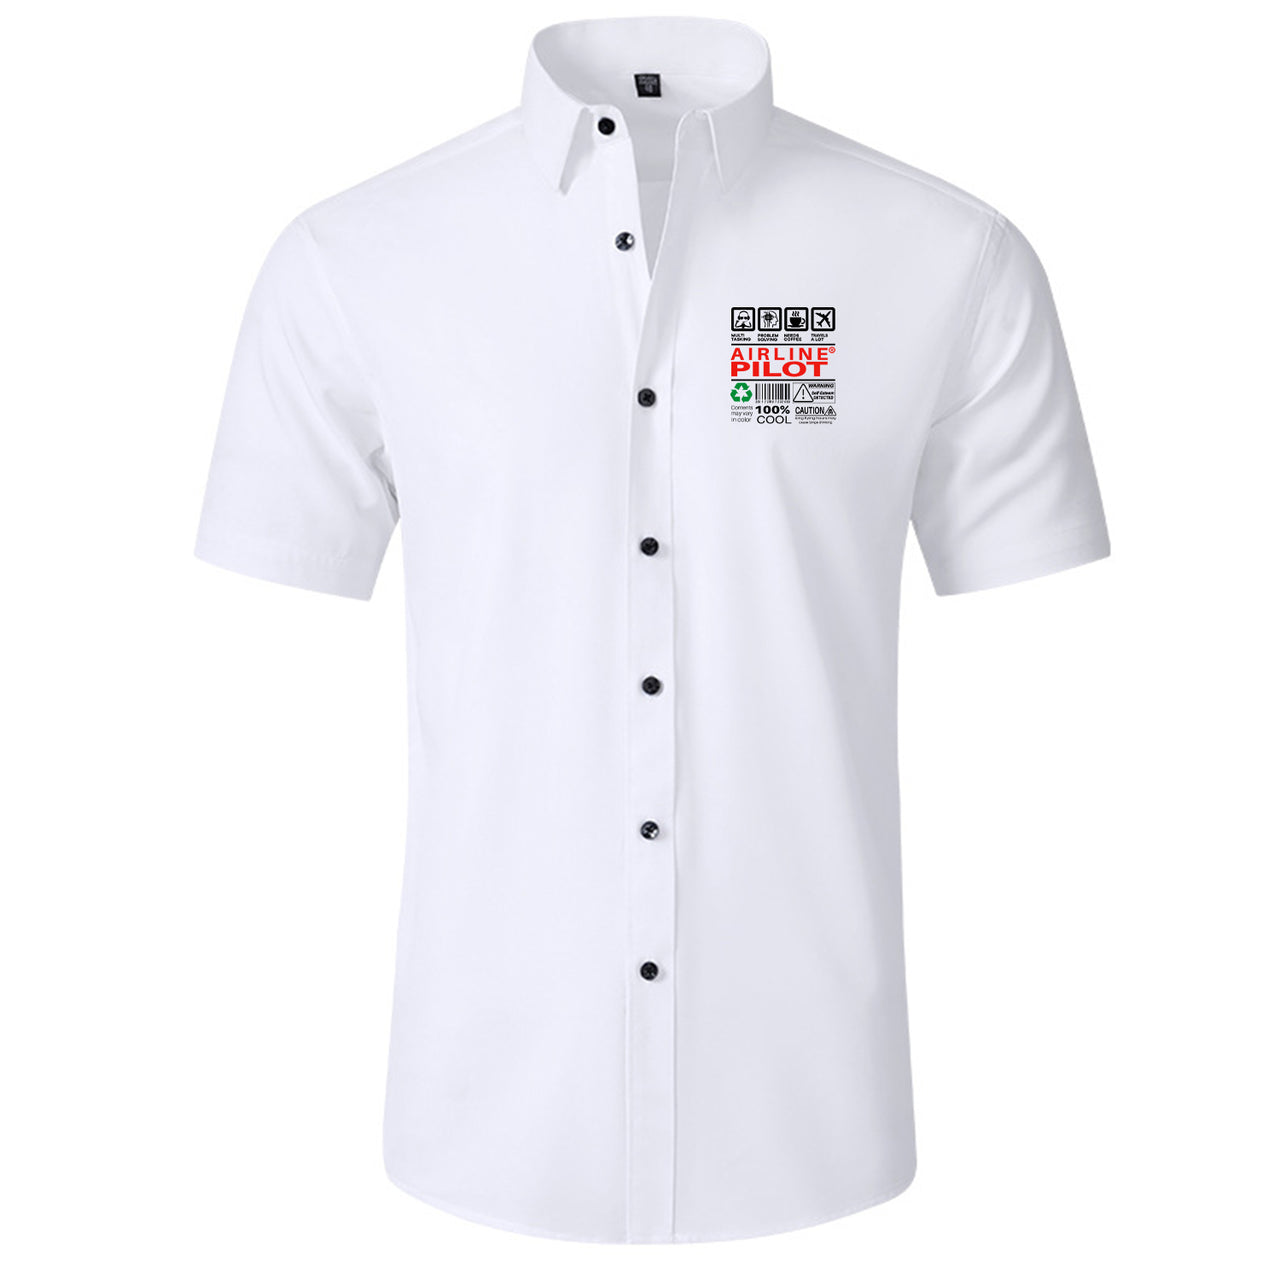 Airline Pilot Label Designed Short Sleeve Shirts